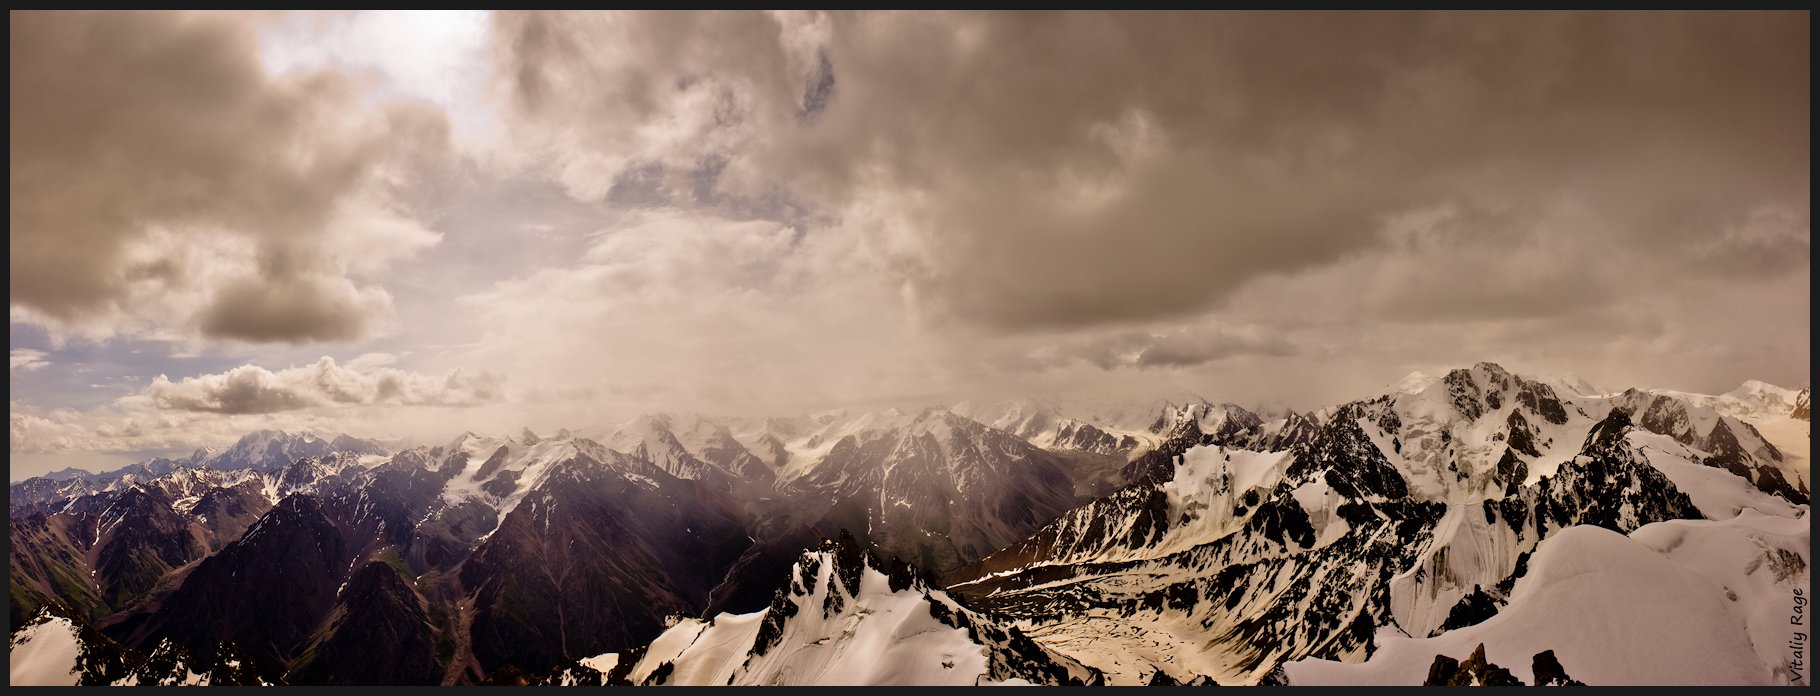 горы, казахстан, свобода, облака, закат, путь, выбор, альпинизм, высота, фрирайд, восход, Vitaliy Rage